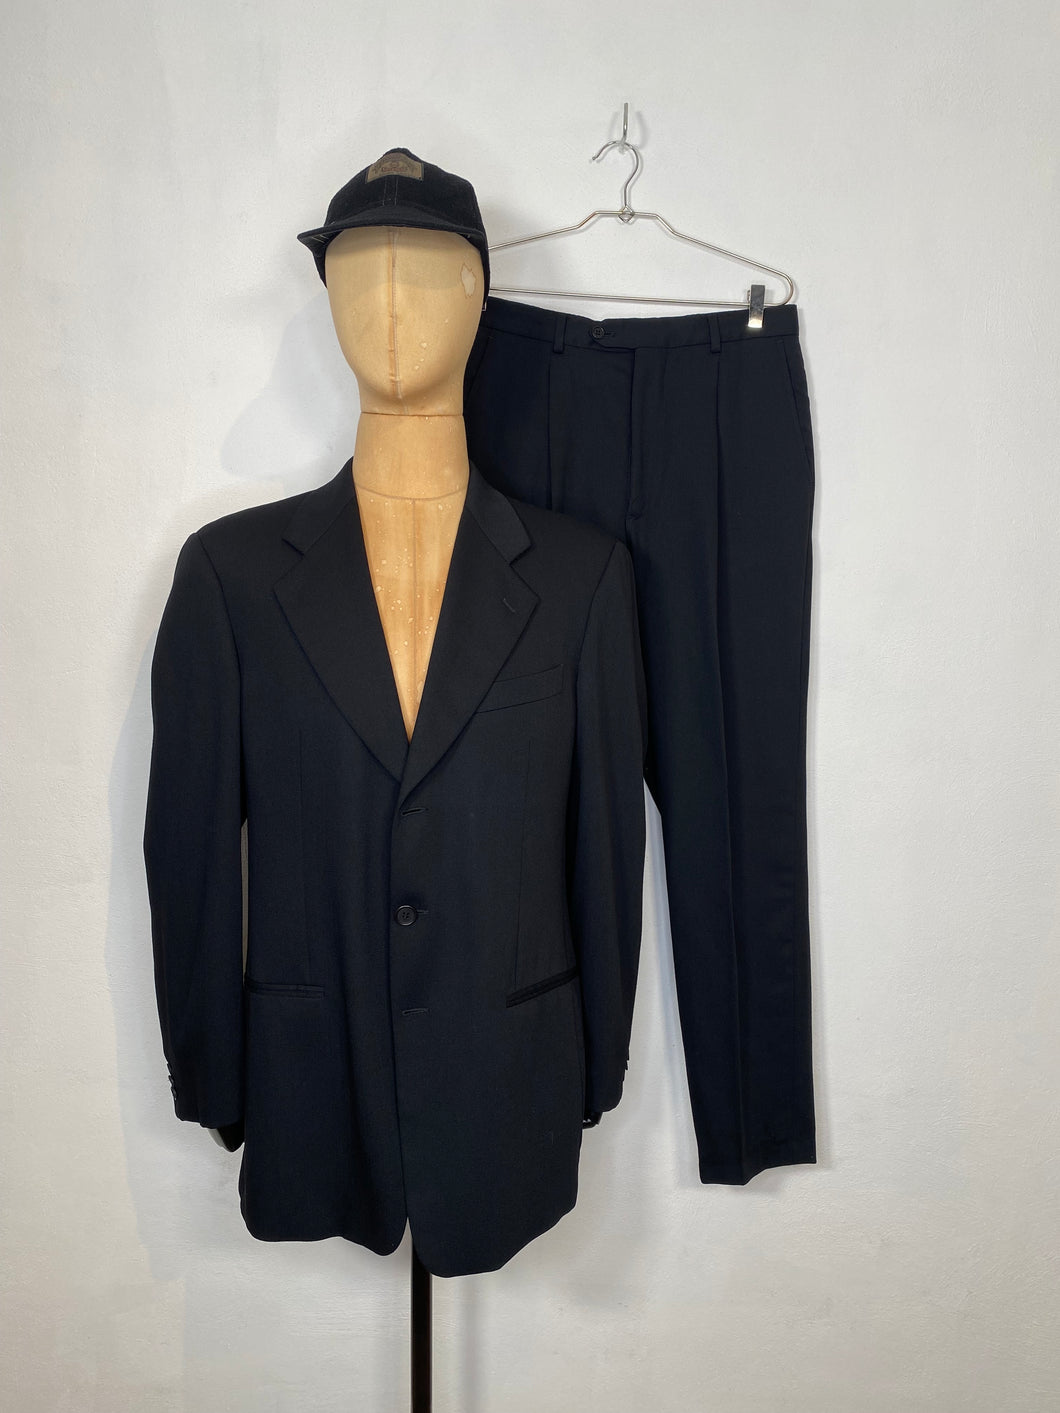 1982 Giorgio Armani single breast suit black